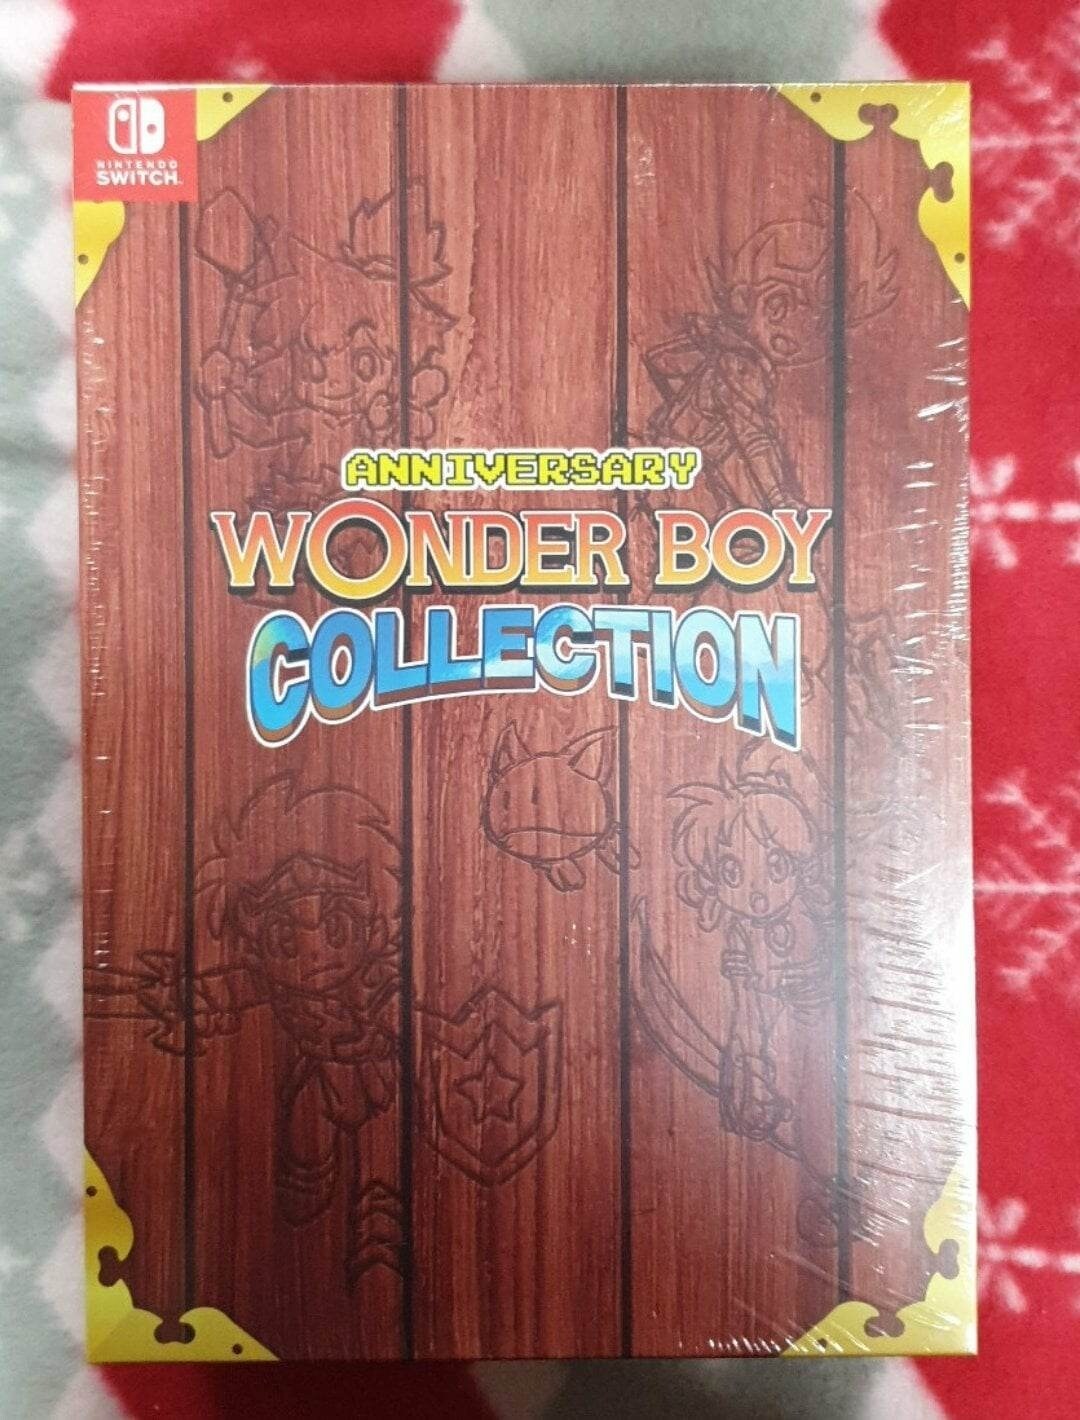 RE:【情報】《神奇男孩週年紀念合輯Wonder Boy Anniversary Collection